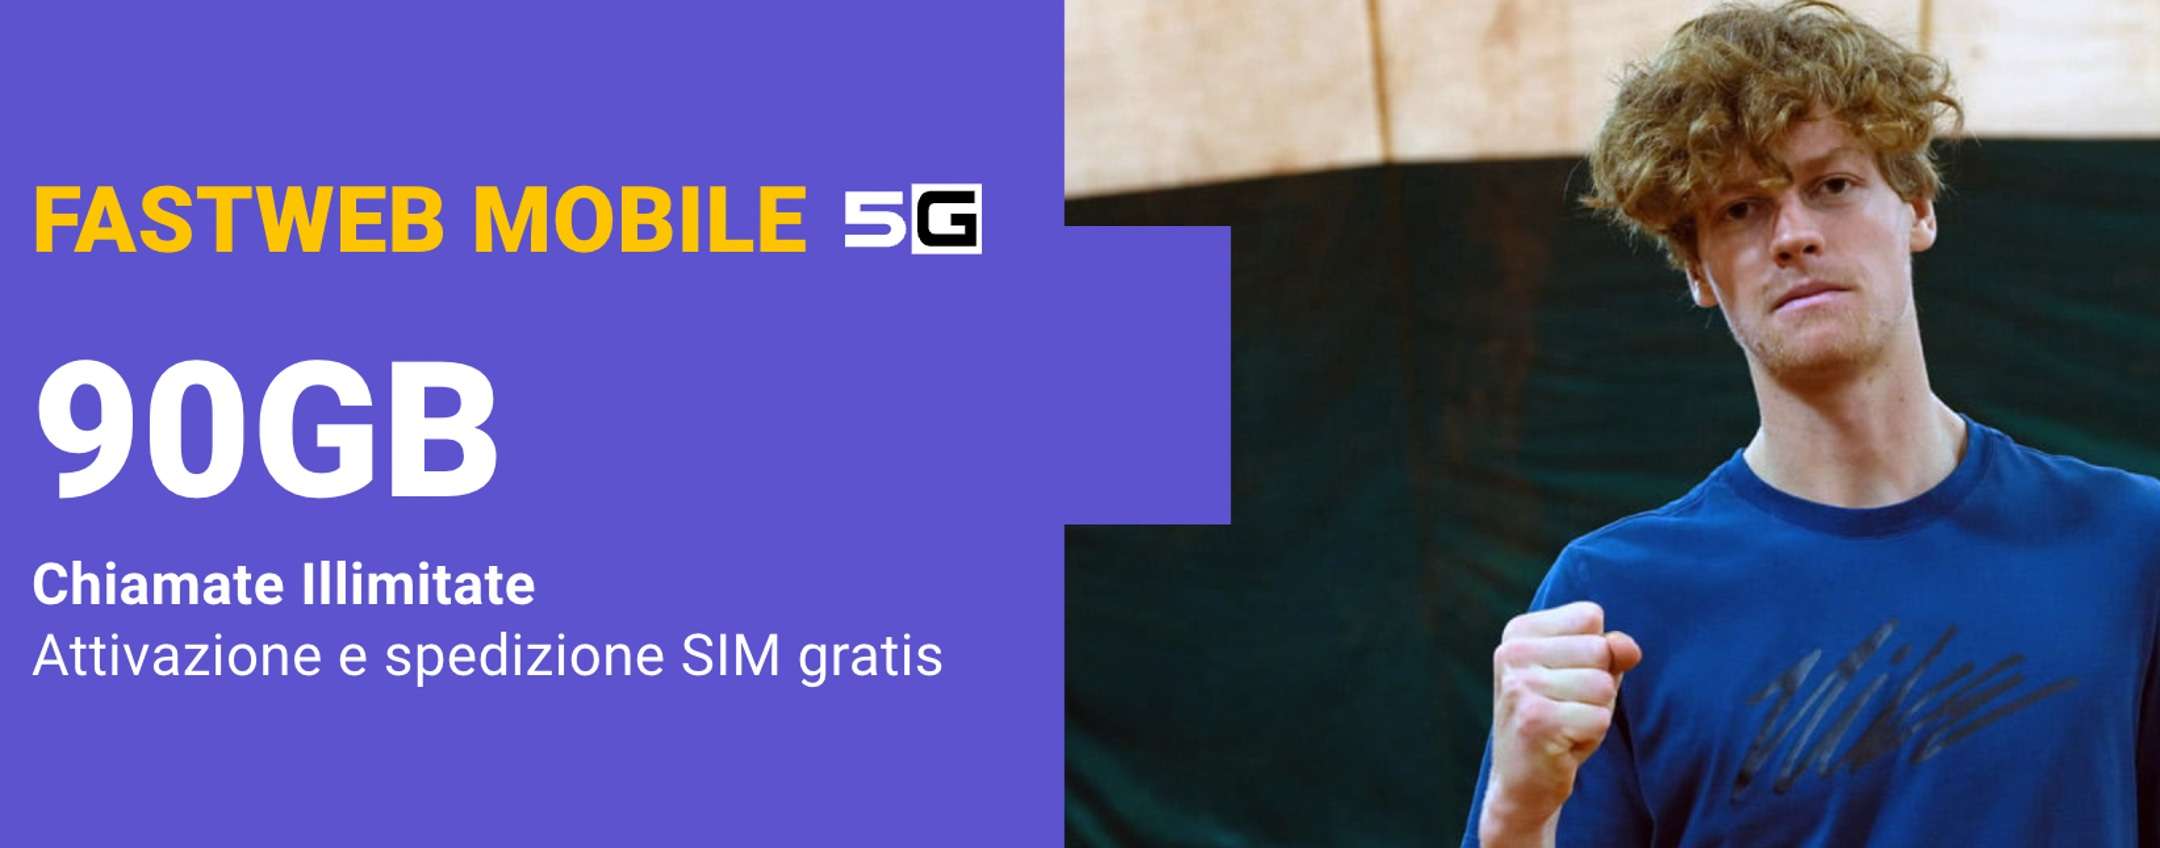 Fastweb Mobile: 90GB in 5G a soli 7,95€ al mese